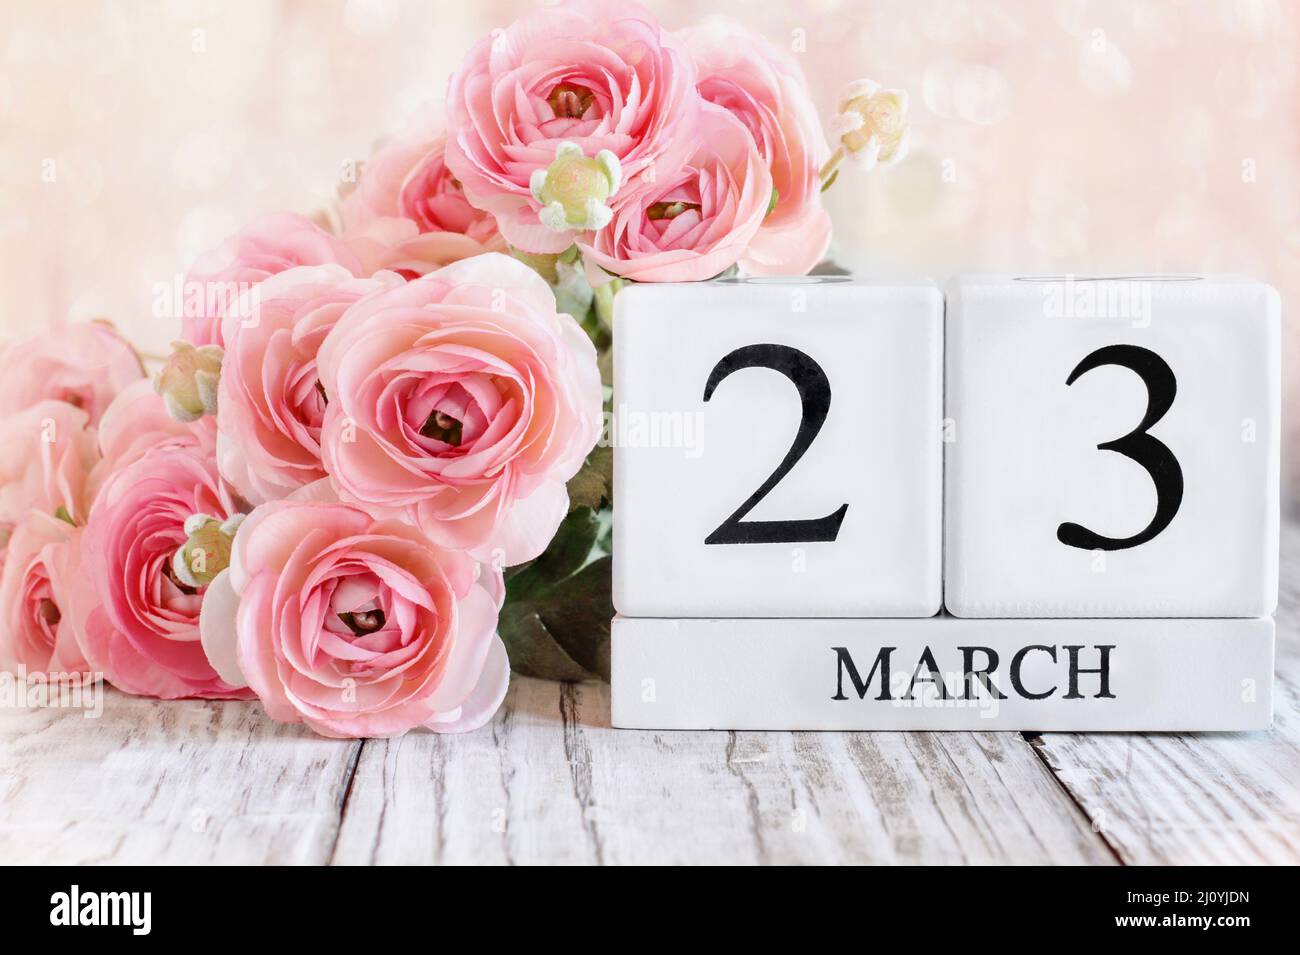 Bloques de calendario de madera blanca con fecha 23 de marzo y flores rosadas ranunculus sobre una mesa de madera. Enfoque selectivo con fondo borroso. Foto de stock